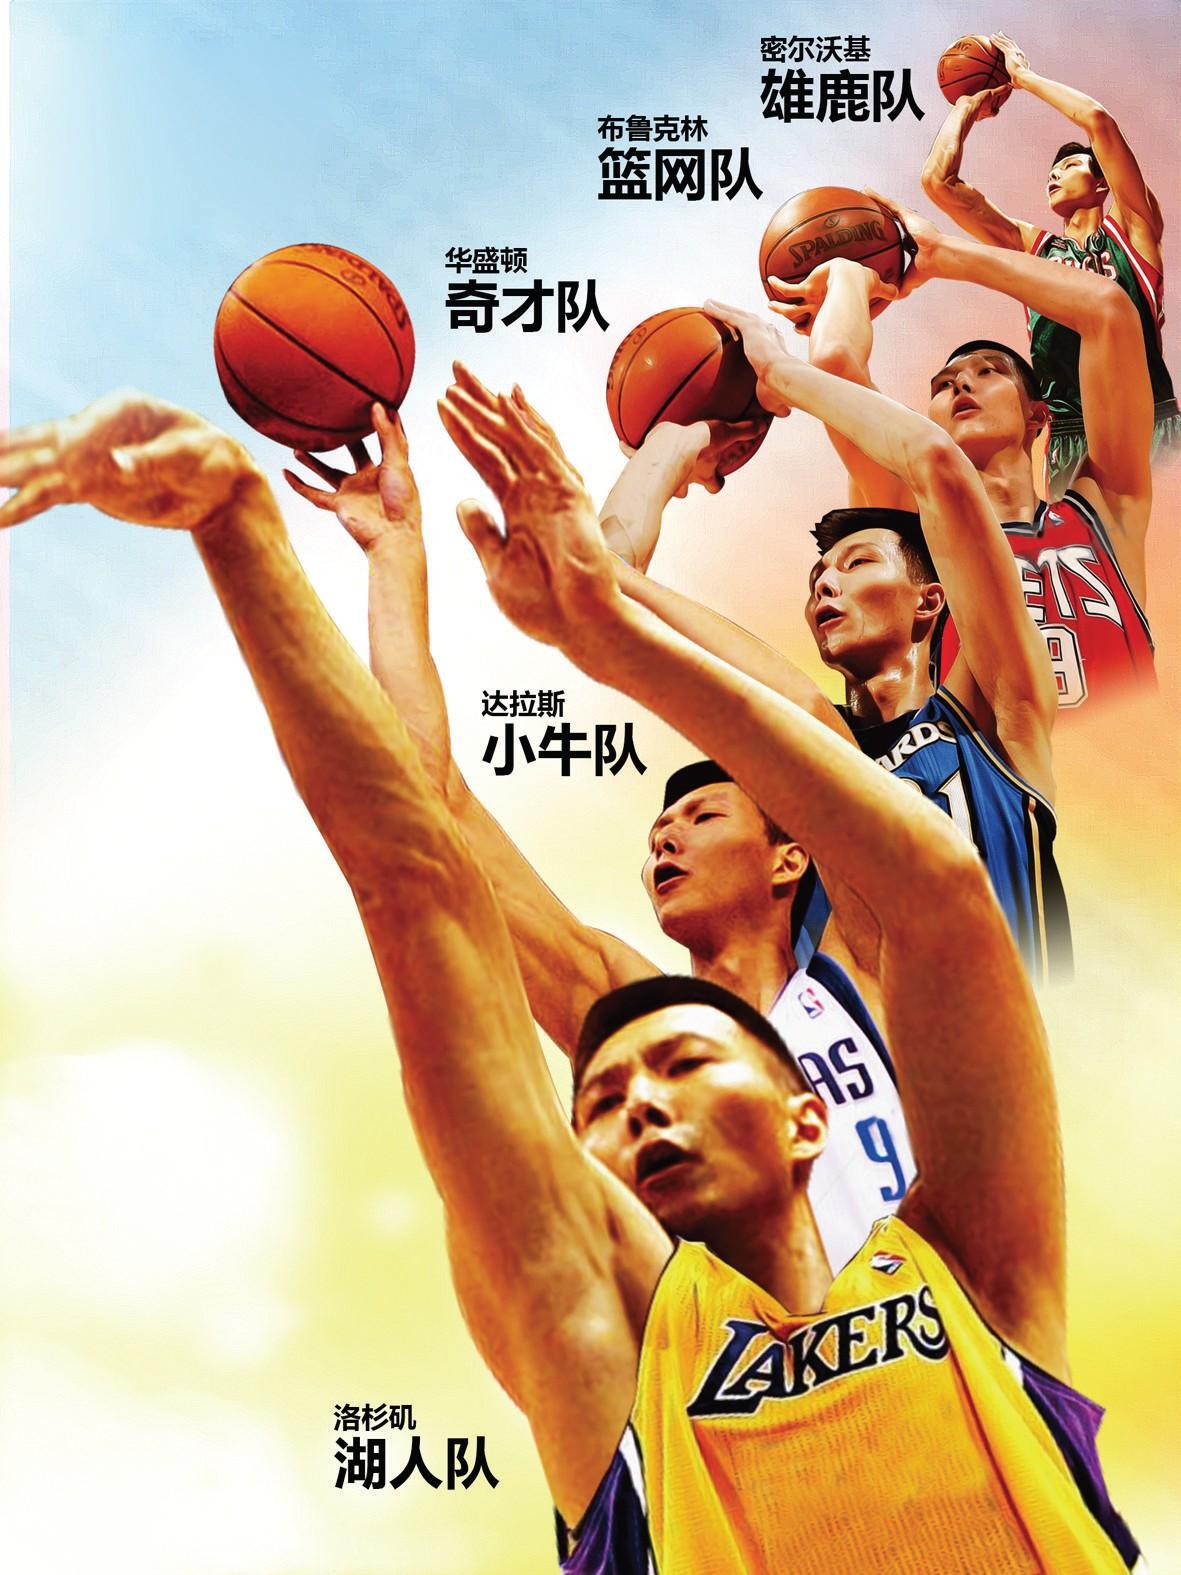 中锋是姚明，控卫是林书豪，NBA中其他三个位置的华人代表是谁呢(7)